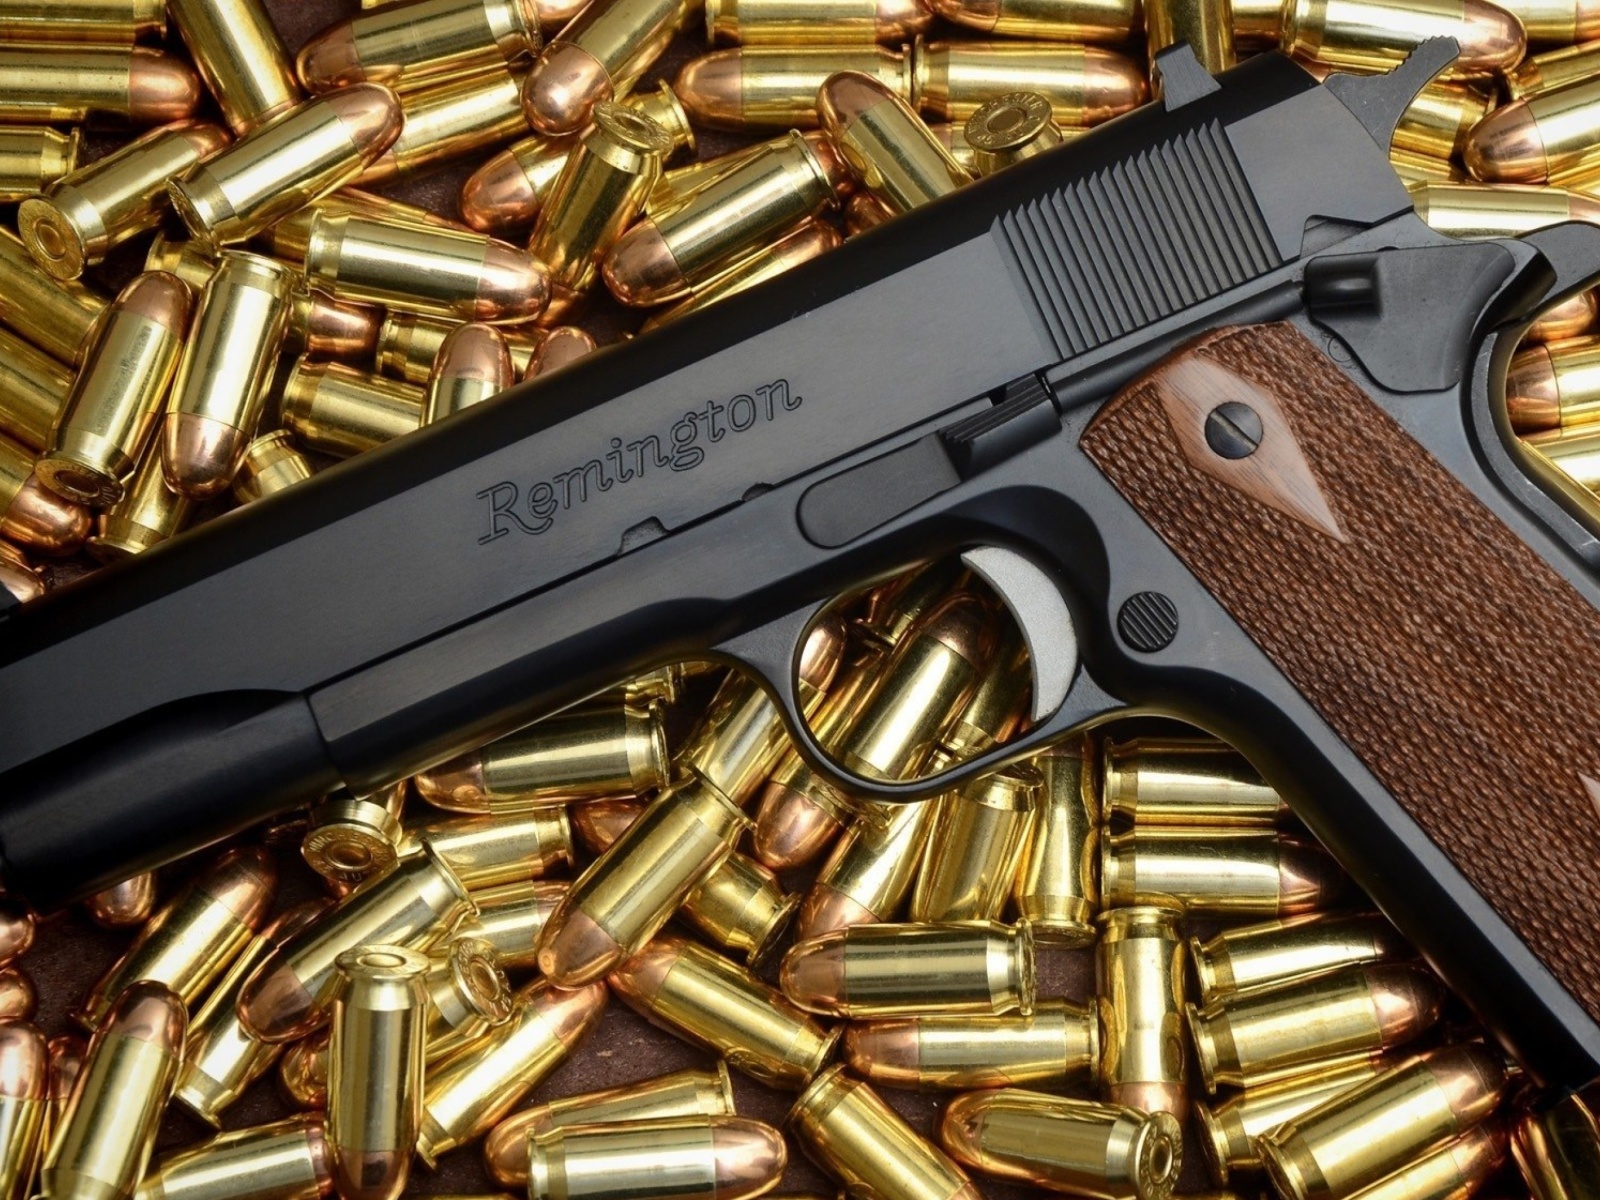 Pistol Remington wallpaper 1600x1200